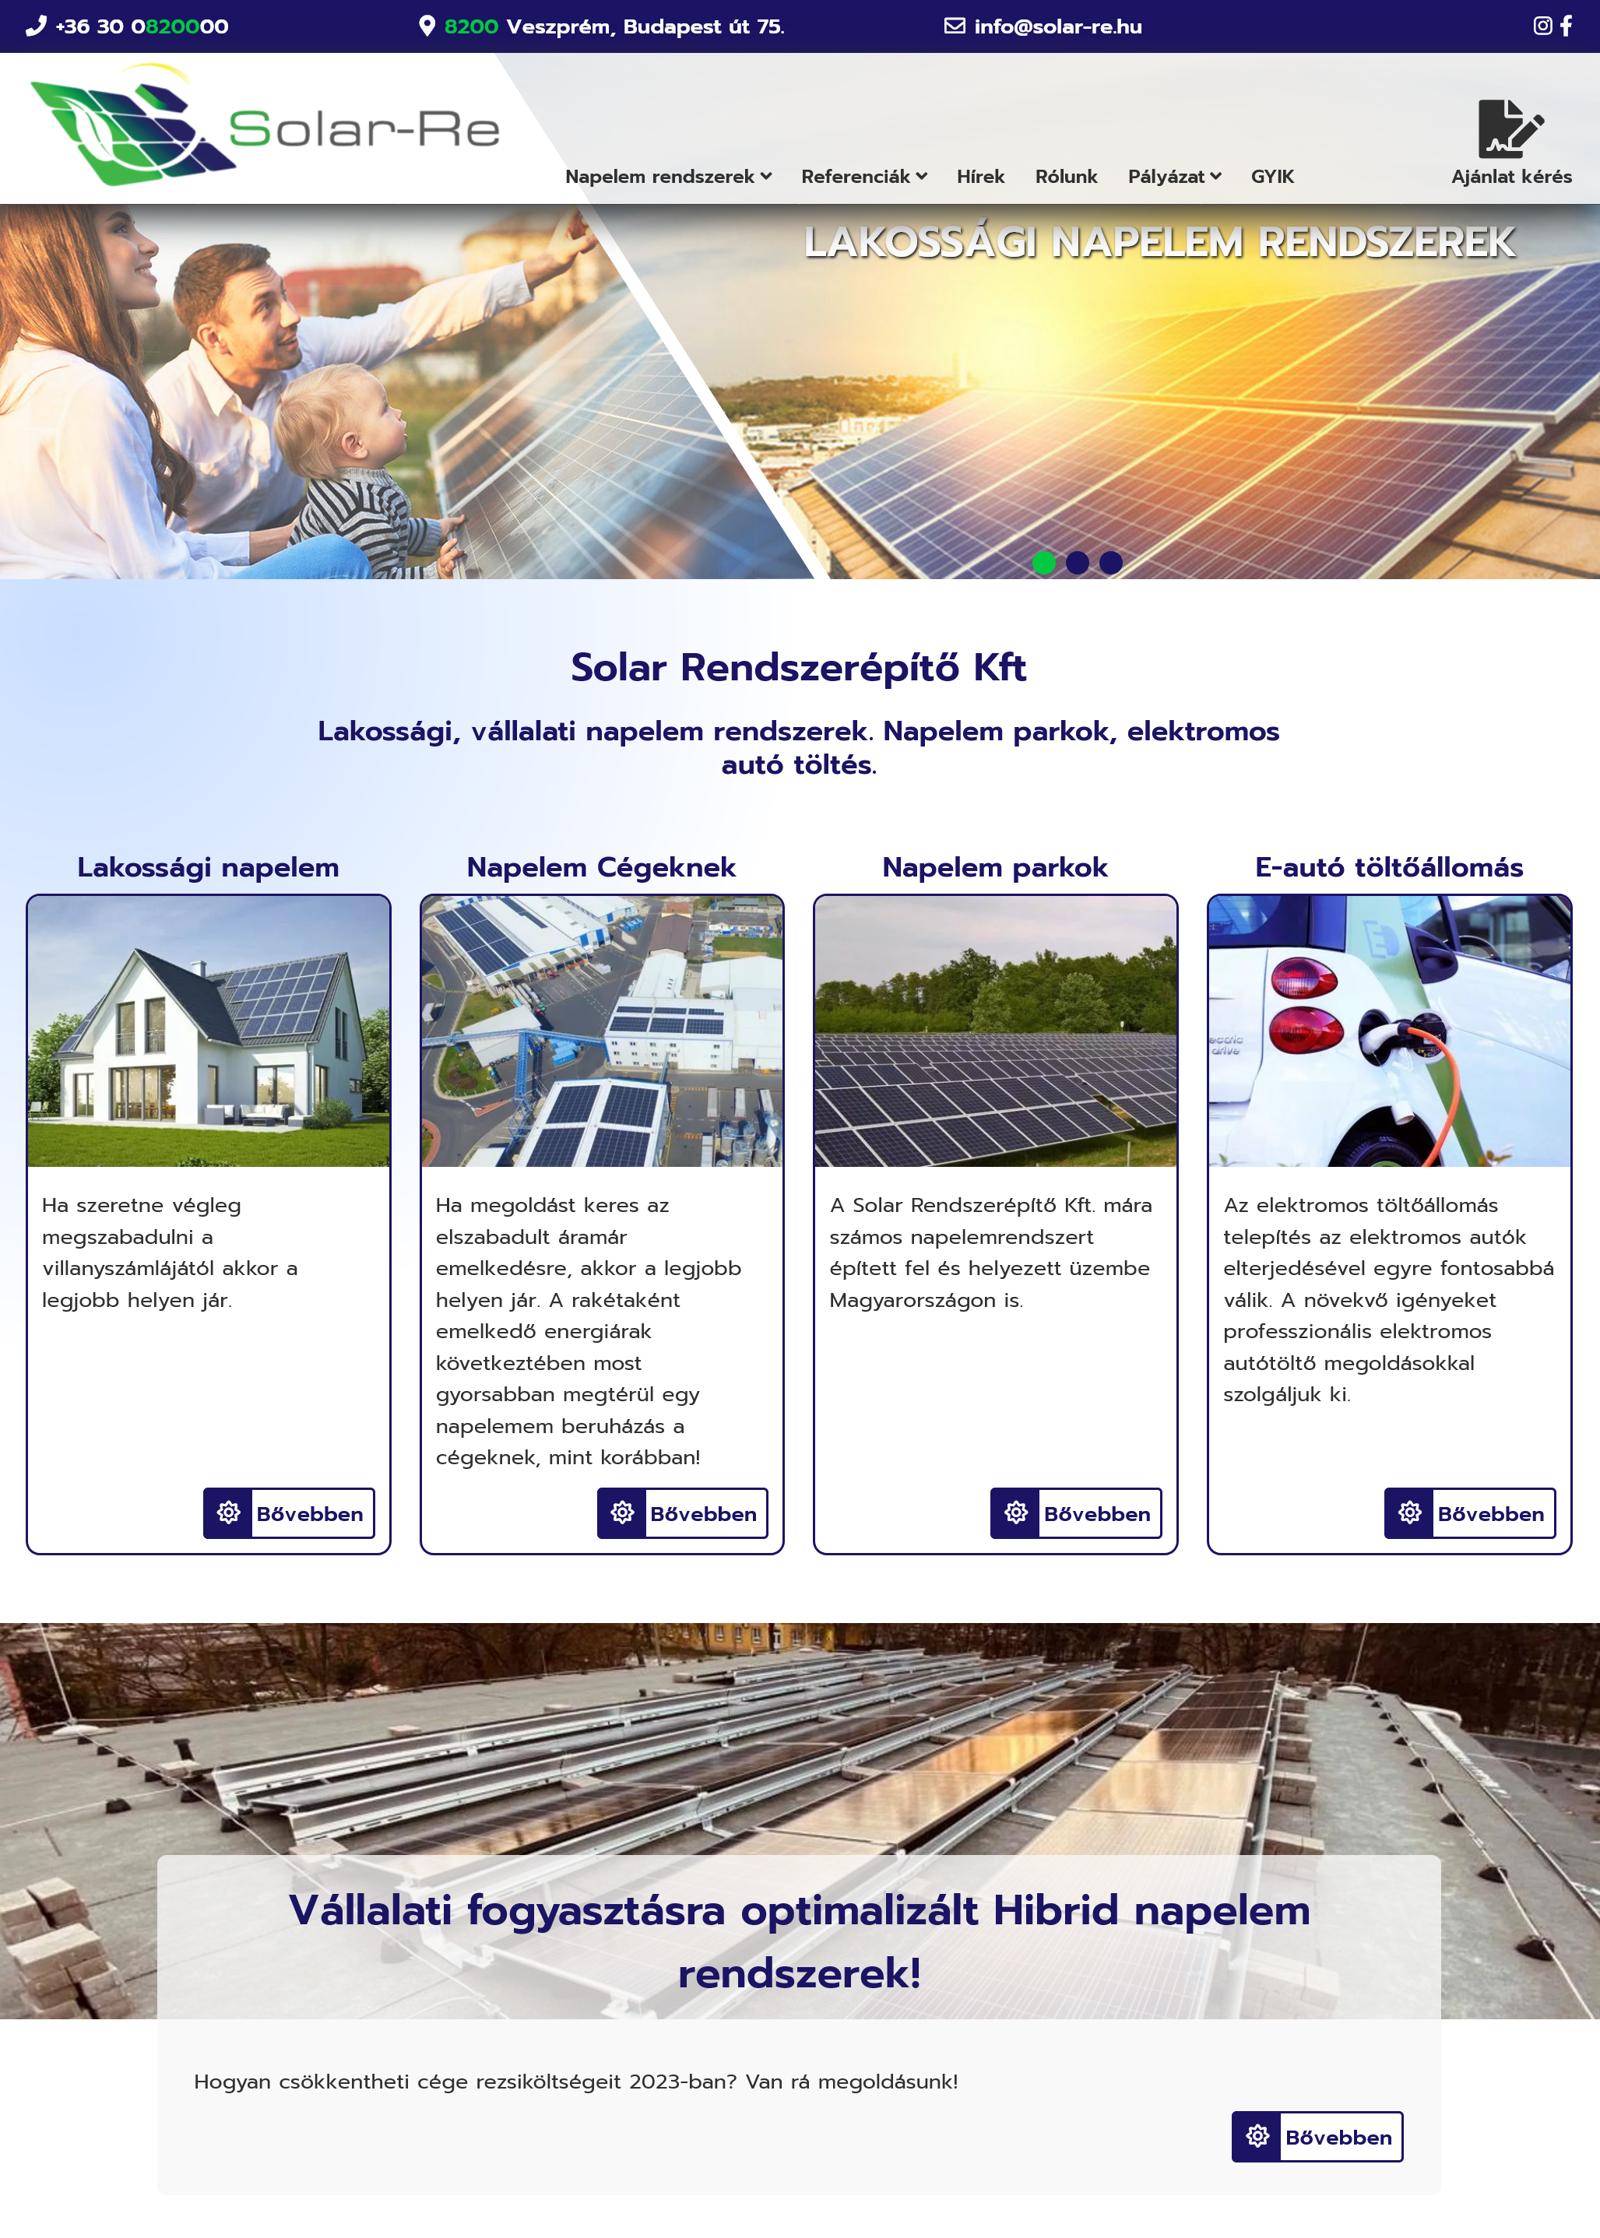 solar-re.hu egyedi fejlesztésű rendszer referencia